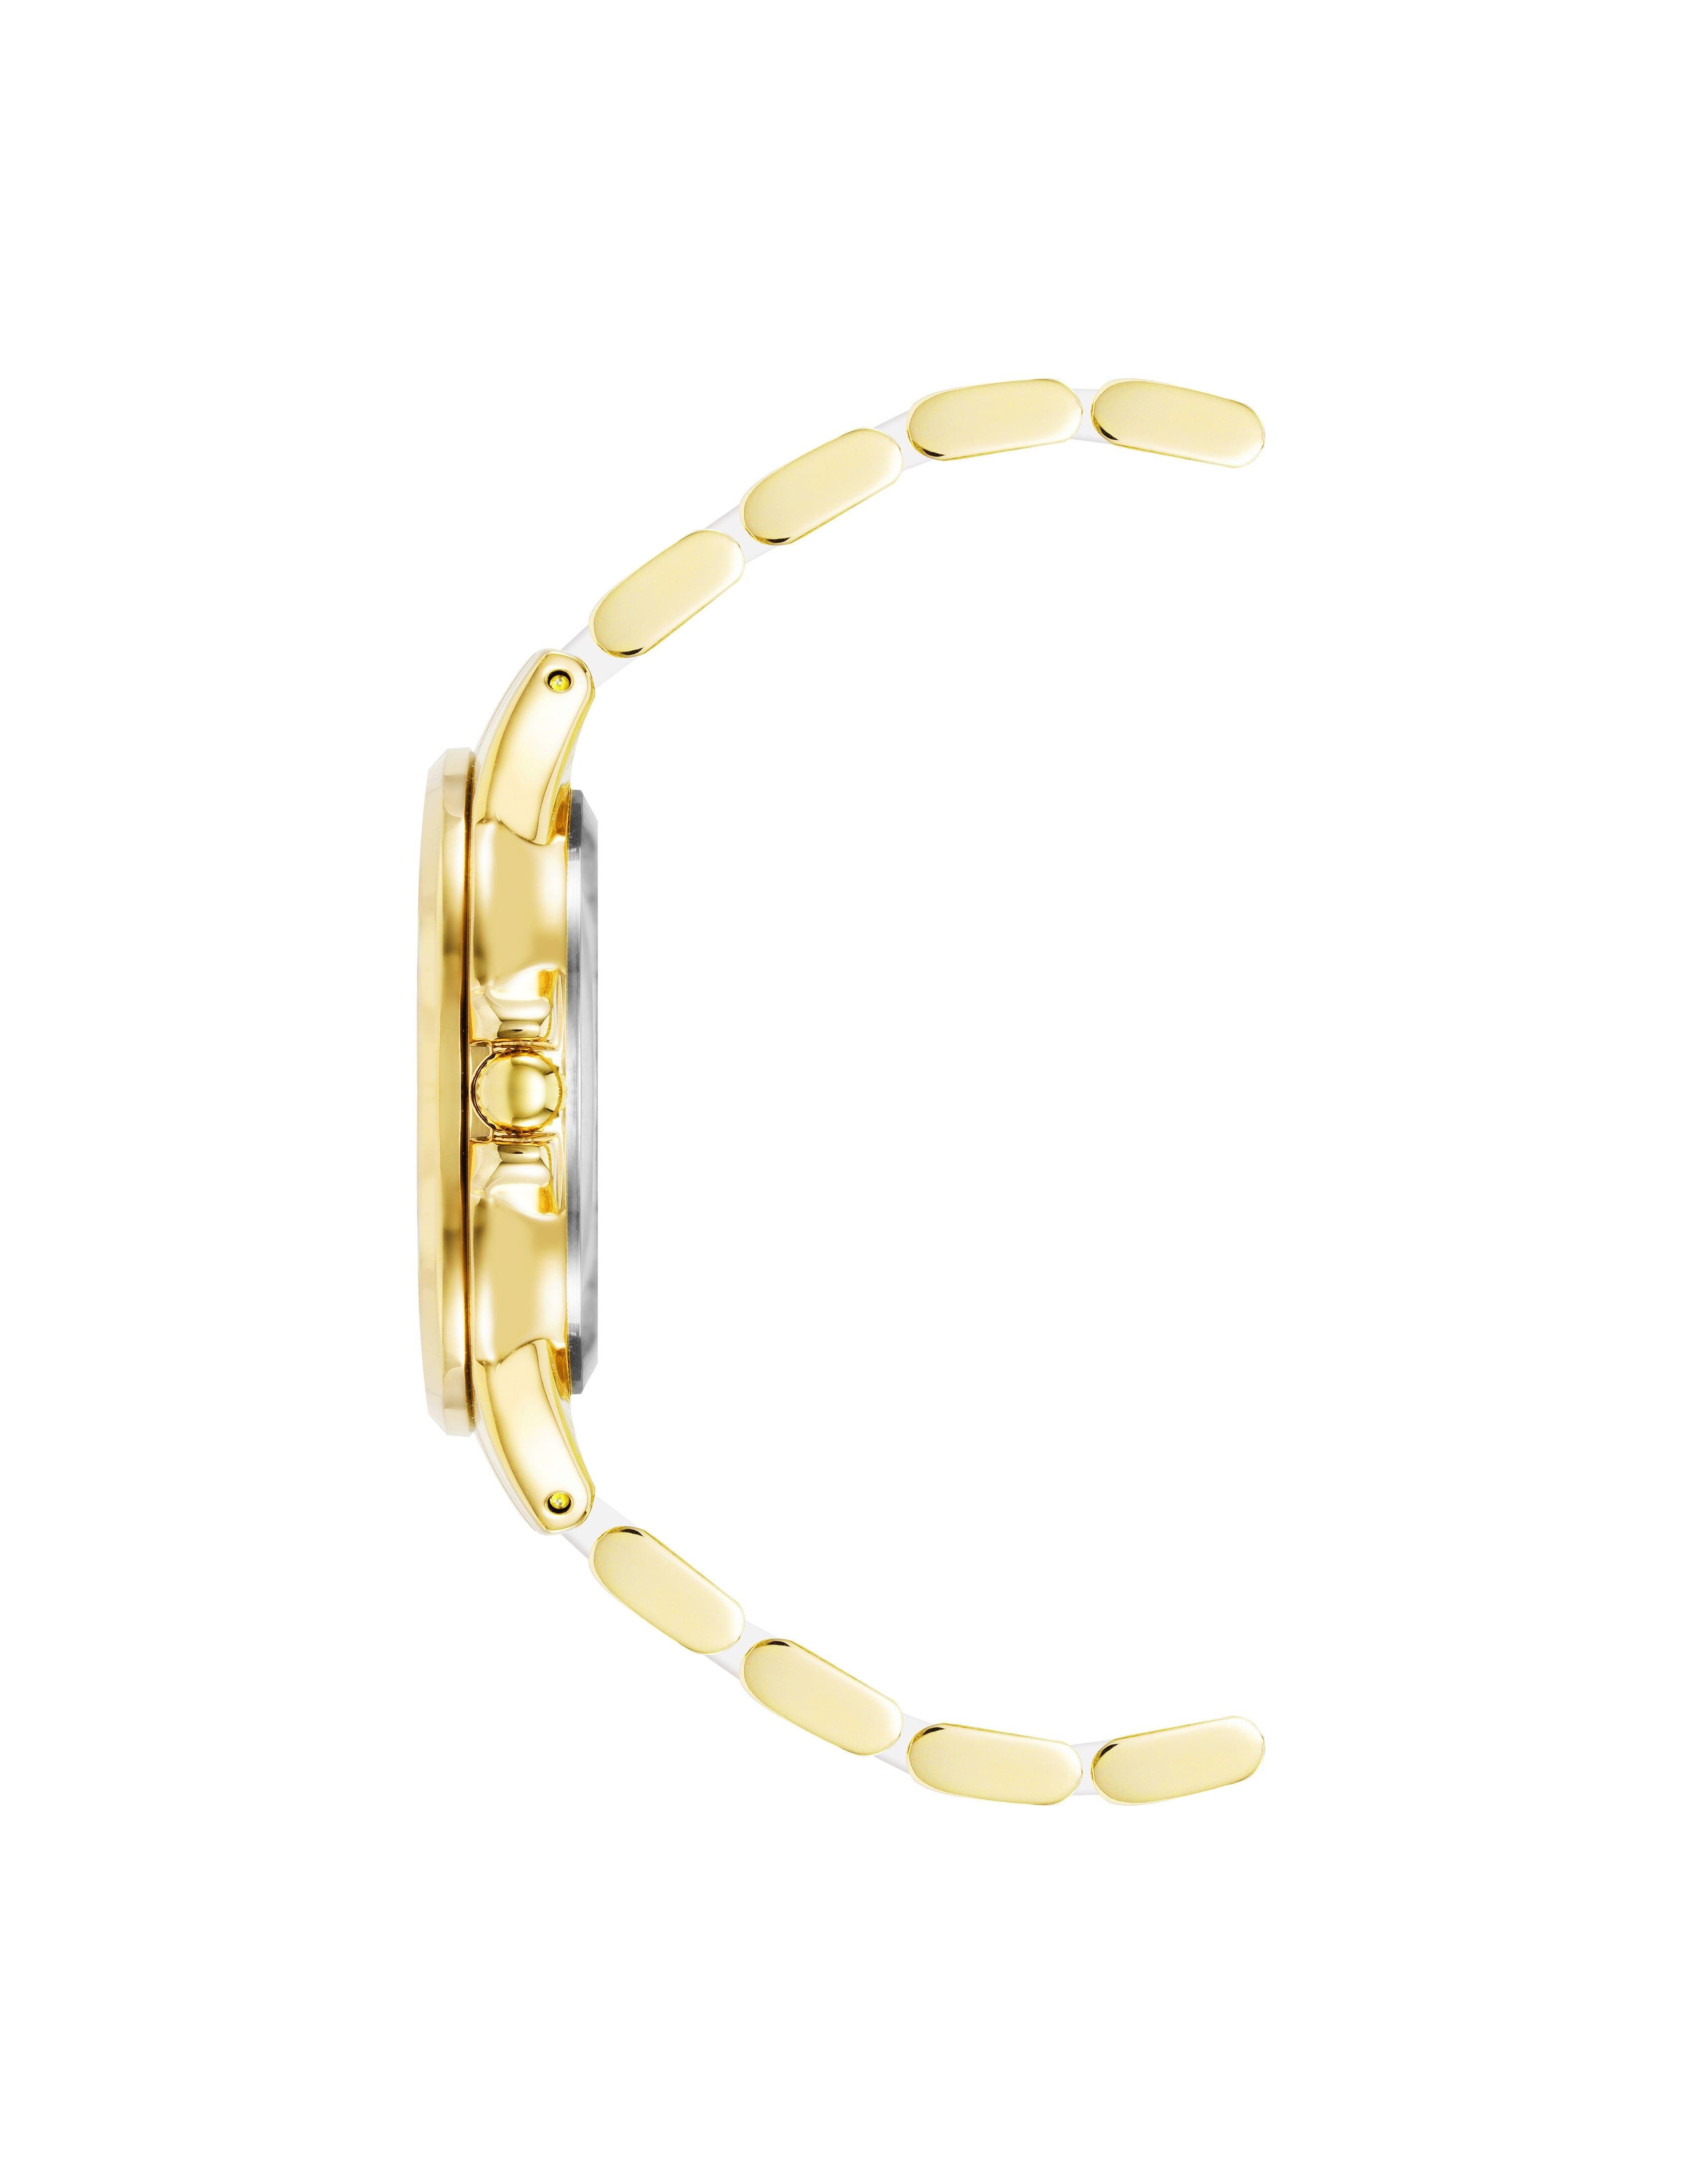 Anne Klein Women's Diamond Accented Ceramic Boyfriend Watch in White/Gold-Tone